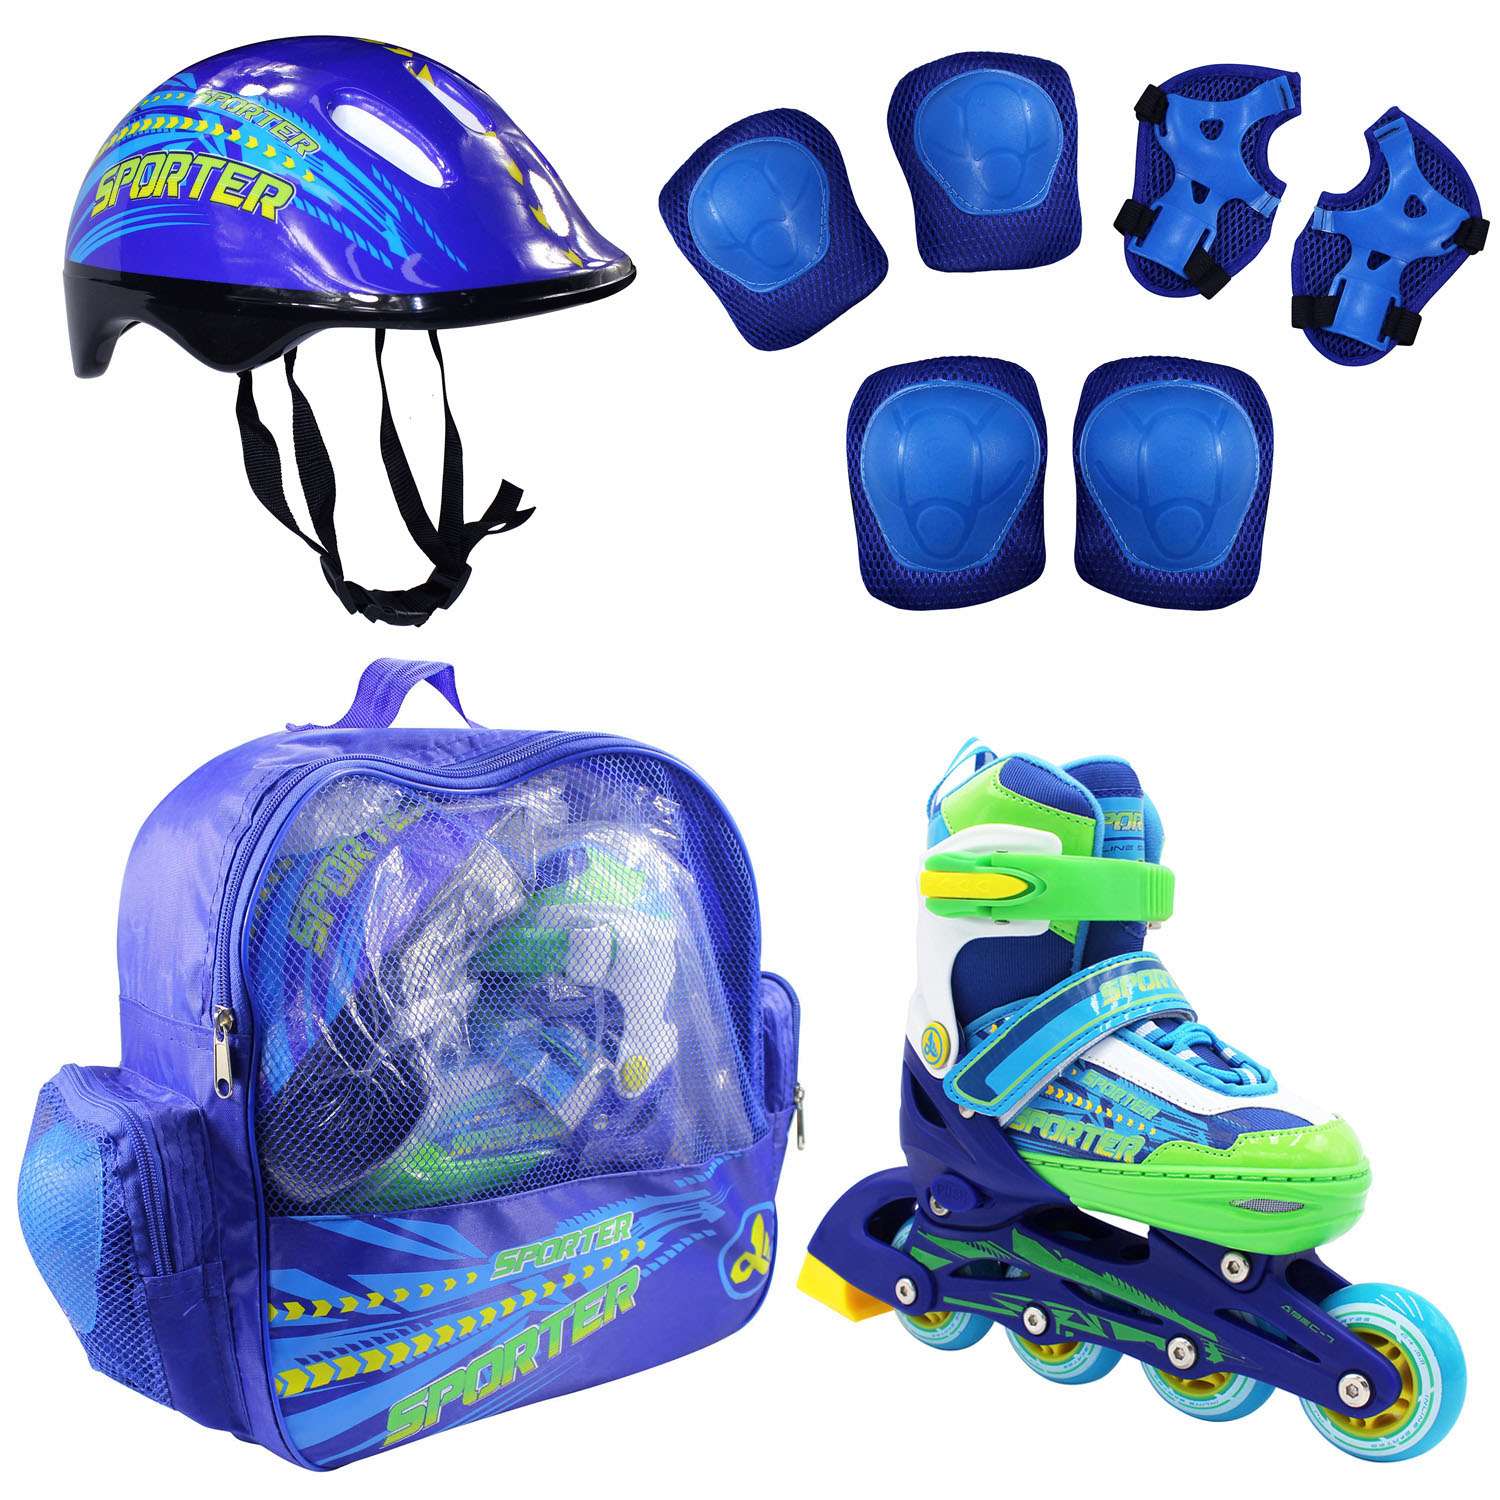 Набор роликовые коньки Alpha Caprice раздвижные Sporter Blue шлем и набор защиты в сумке размер S 31-34 - фото 1